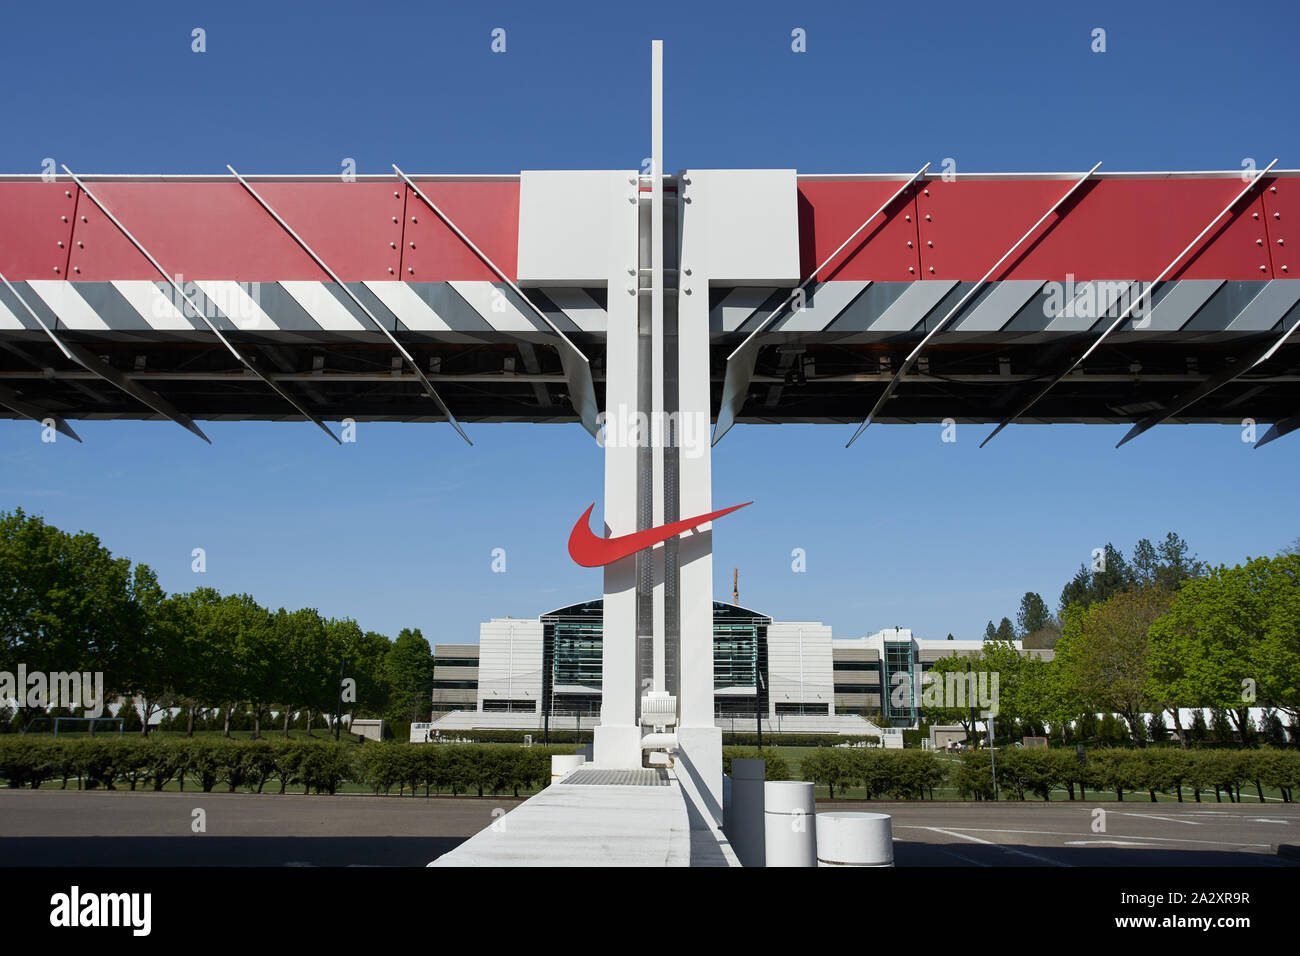 Il logo Nike "Woosh" è visibile in uno degli ingressi alla sede centrale  Nike World di Beaverton, Oregon, Stati Uniti Foto stock - Alamy